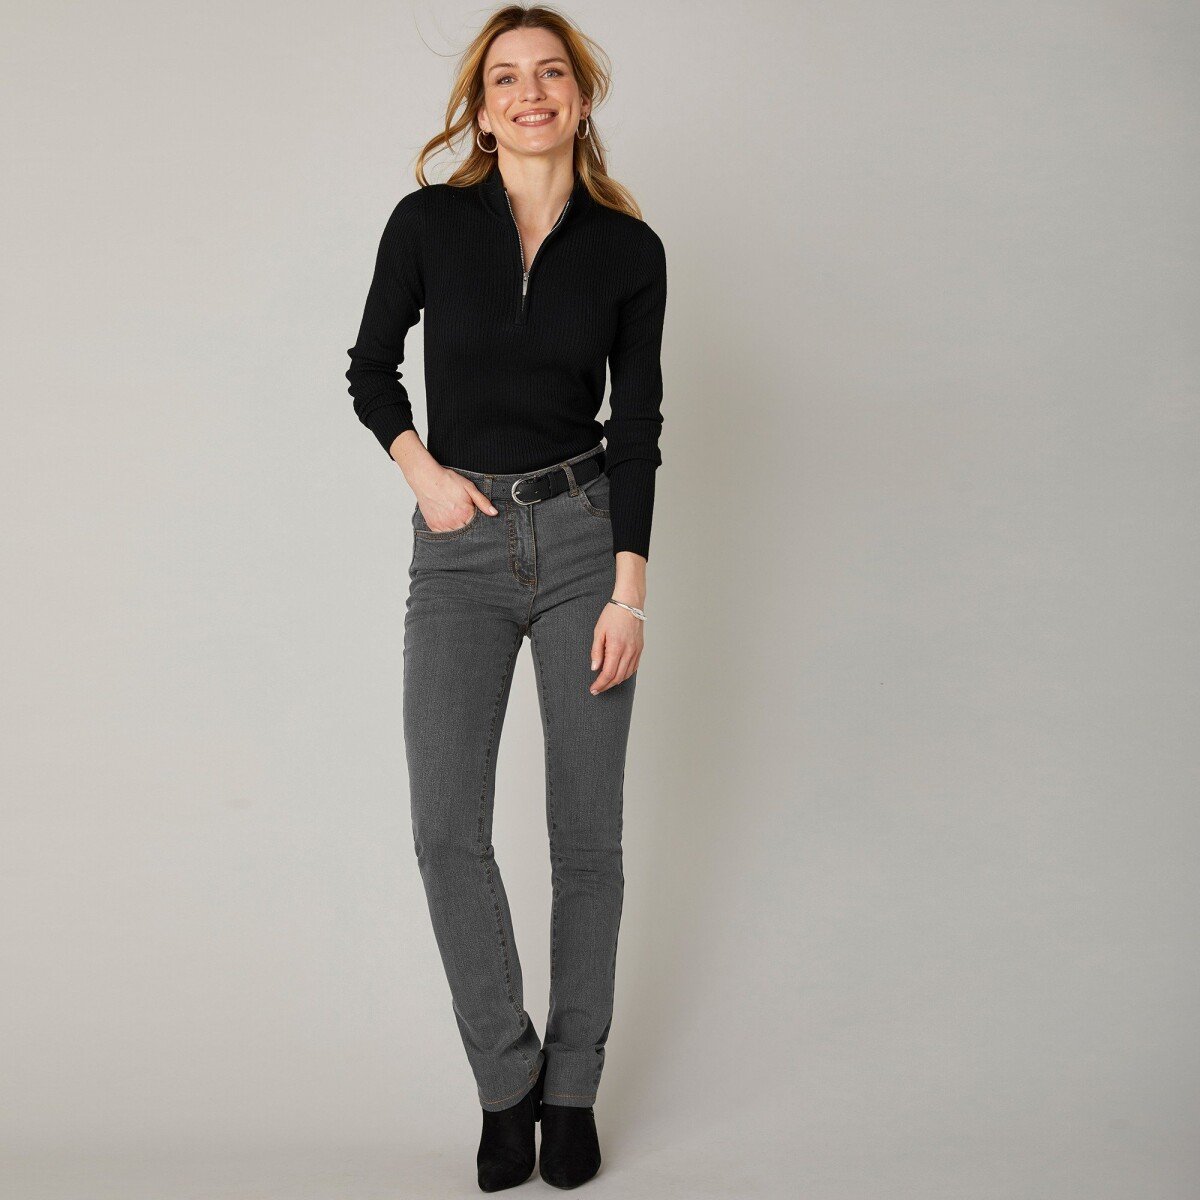 Blancheporte Strečové rovné džíny, střední výška postavy tmavě šedá 48